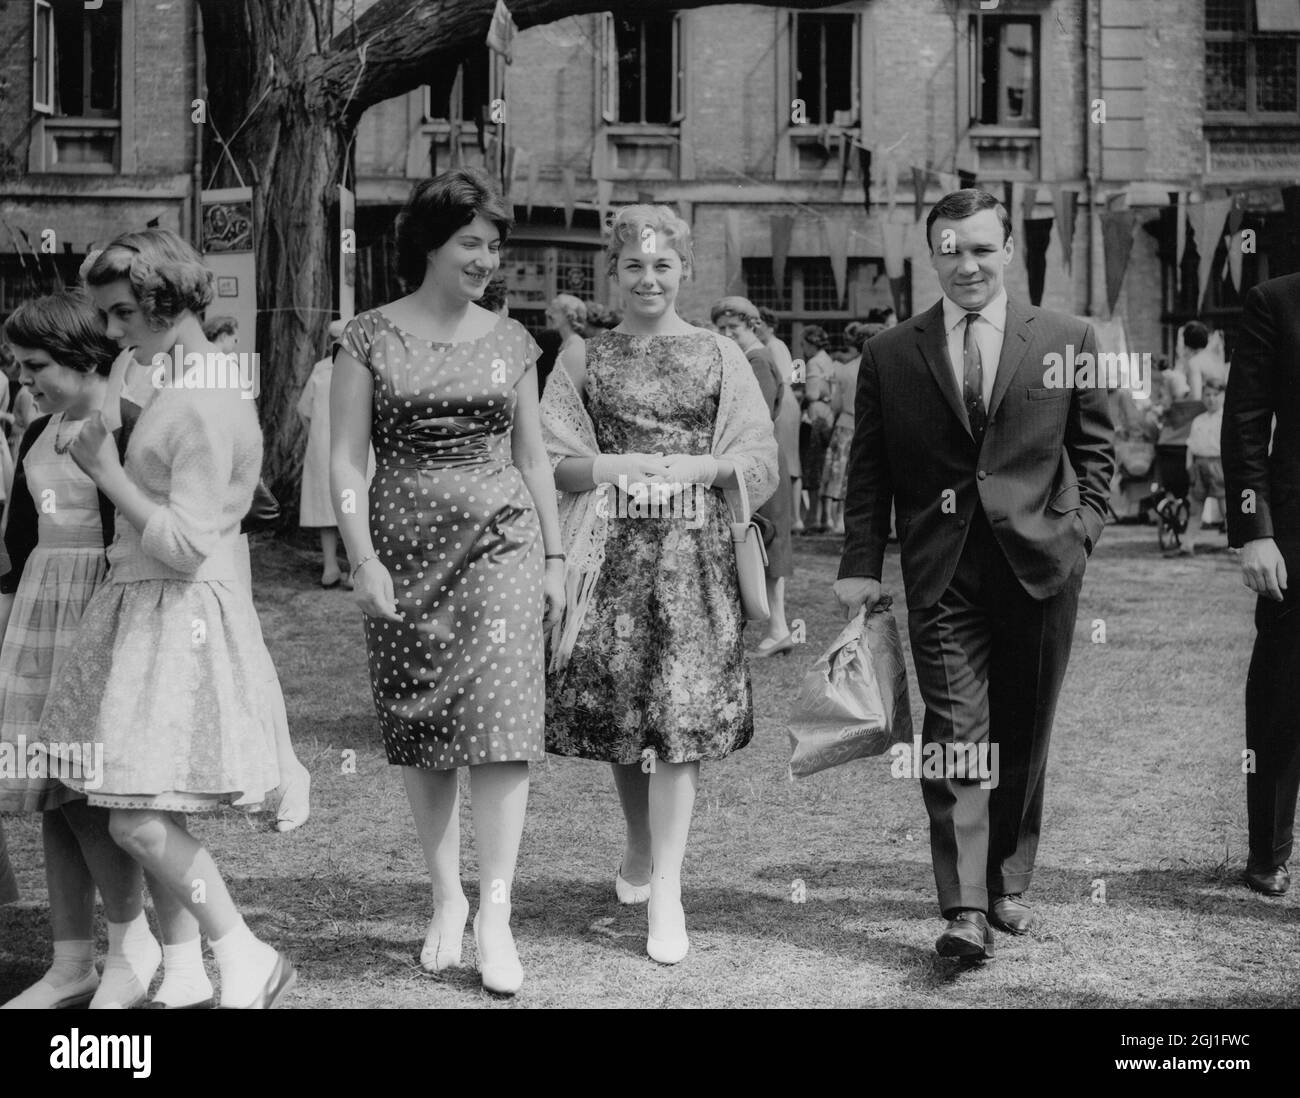 Marjorie Thomson , à gauche qui est vice-étudiante senior au Dartford Physical Training College , escorte Dave Charnley , le célèbre boxeur , et sa femme autour des stands du College fete en aide au fonds d'appel des réfugiés . 9 mai 1960 Banque D'Images